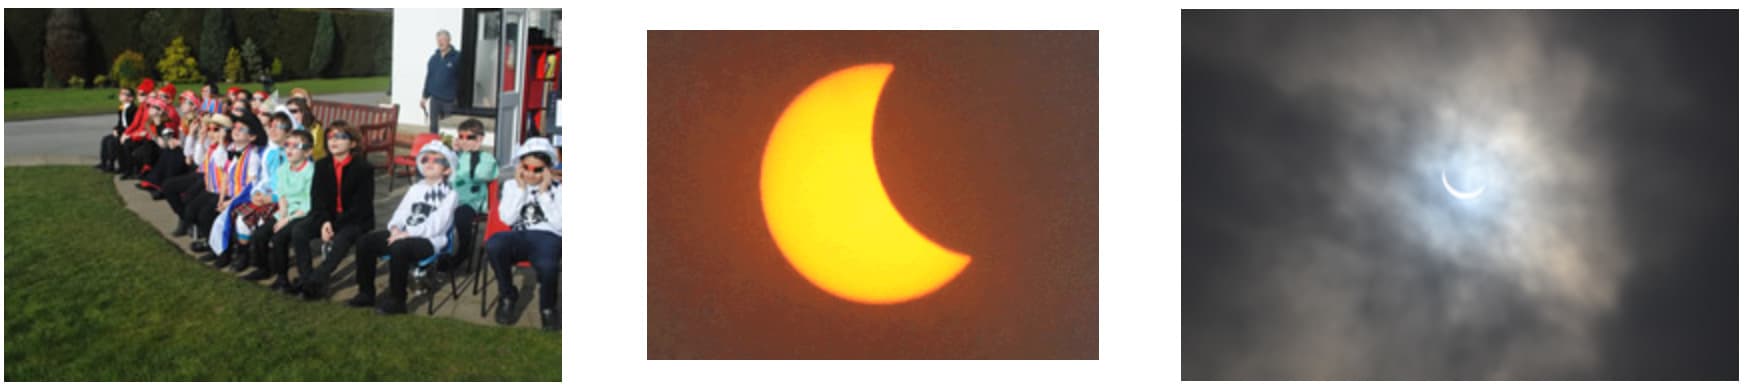 Fairholme Preparatory School: Solar Eclipse